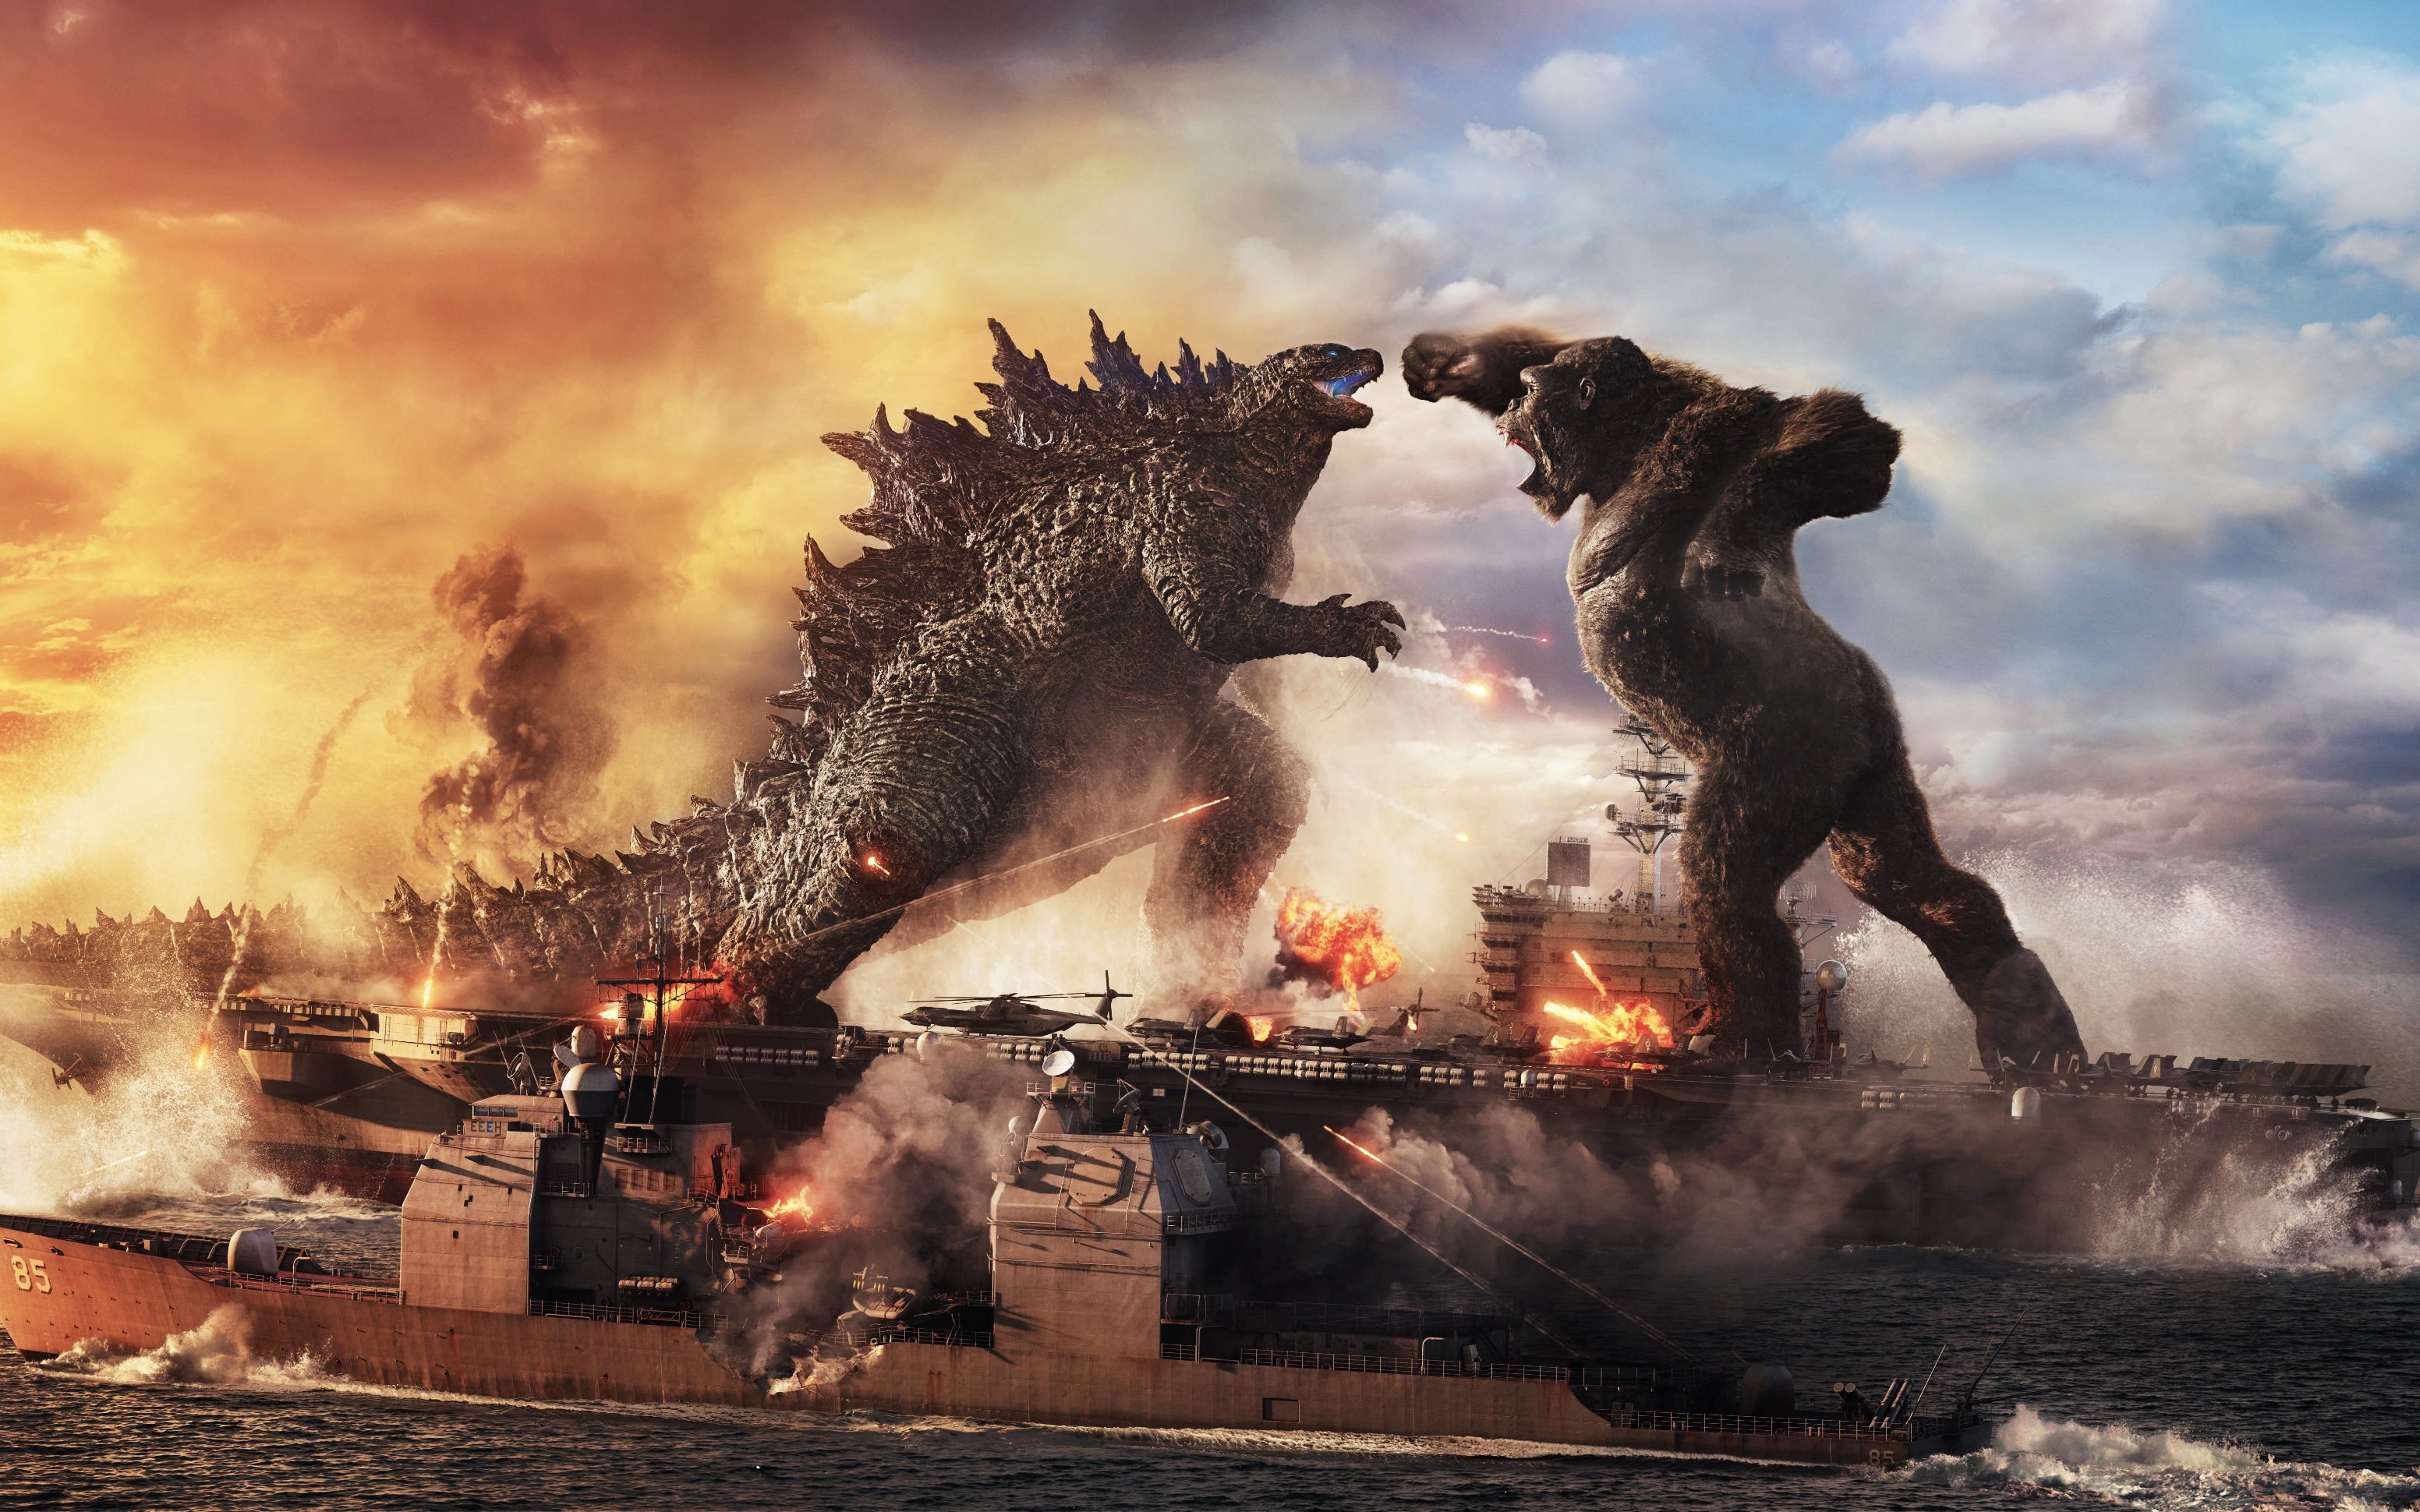 Godzilla vs Kong #MovieOfTheWeek